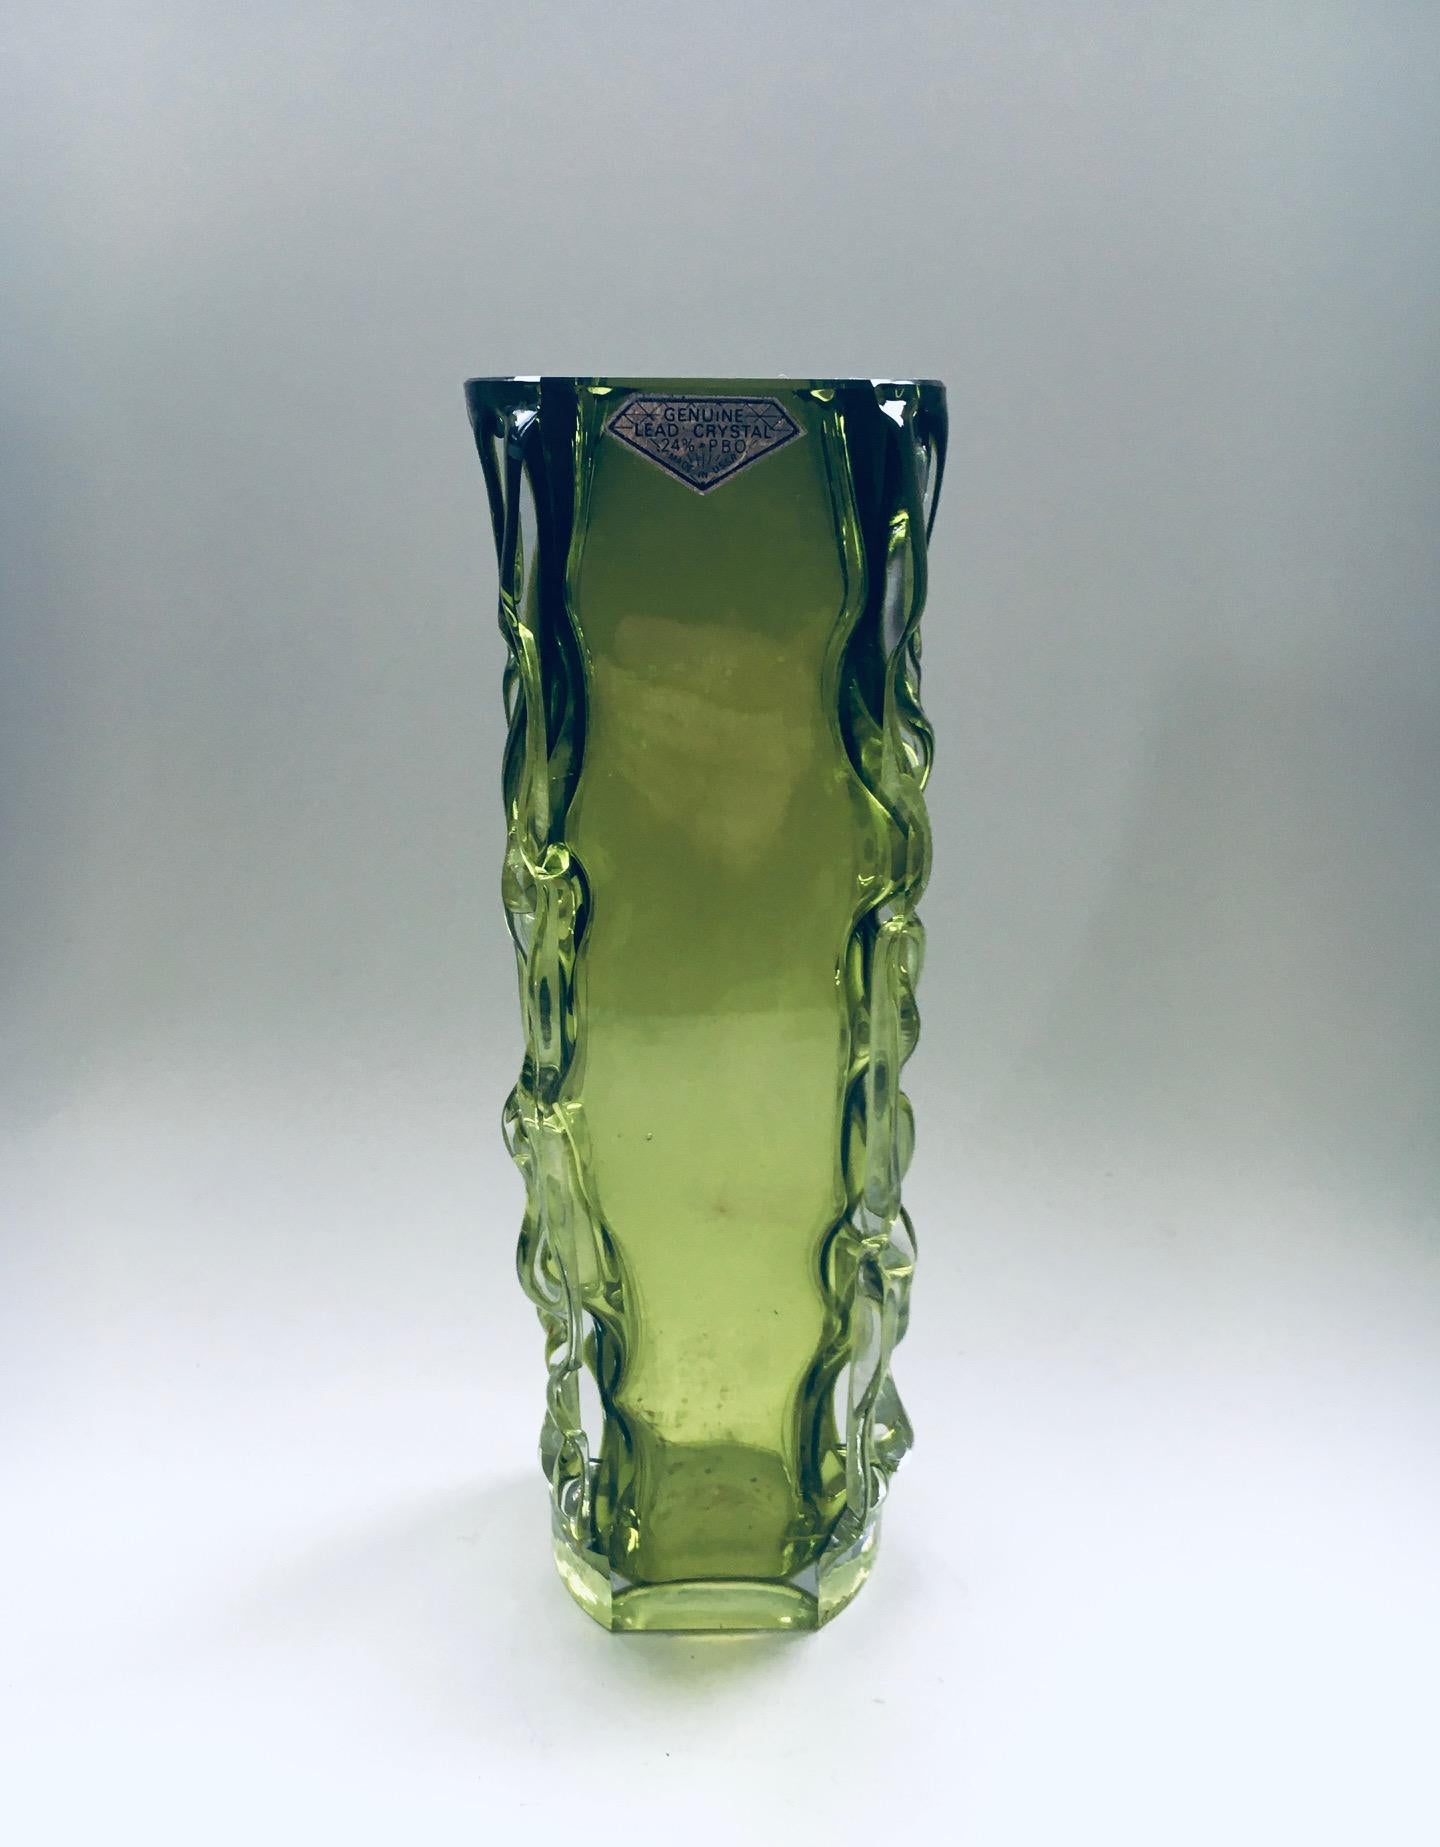 Vintage Midcentury Modern Russian Design Genuine Lead Crystal Art Glass Vase, hergestellt in der UdSSR, ehemalige Sowjetunion CCCP in den 1960er Jahren. Von Aknuny Astvatsaturyan für die Leningrader Kunstglasfabrik. Mit Original Label-Aufkleber;